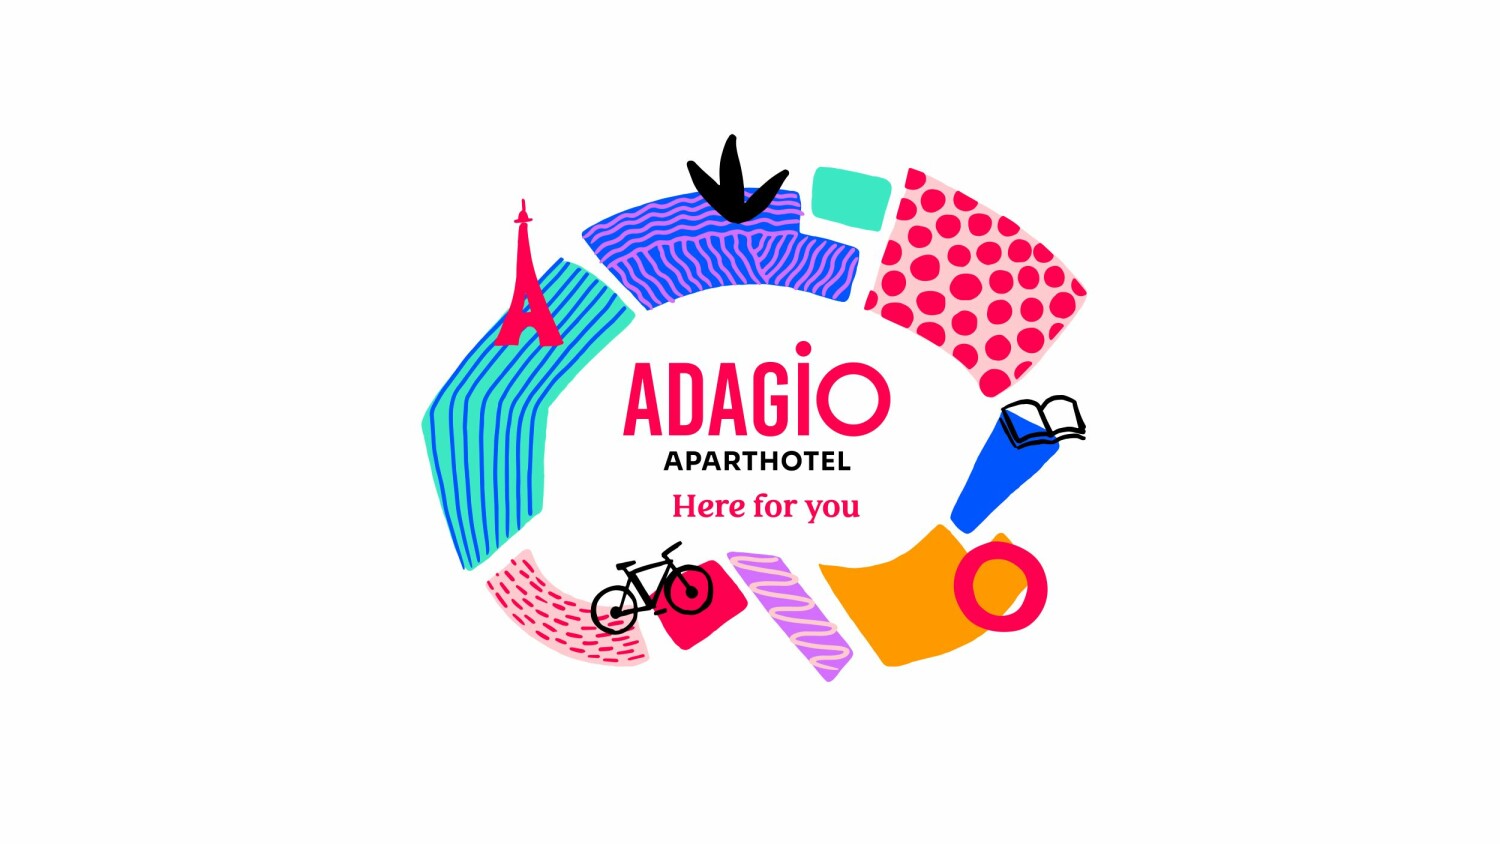 Adagio dévoile une nouvelle identité de marque